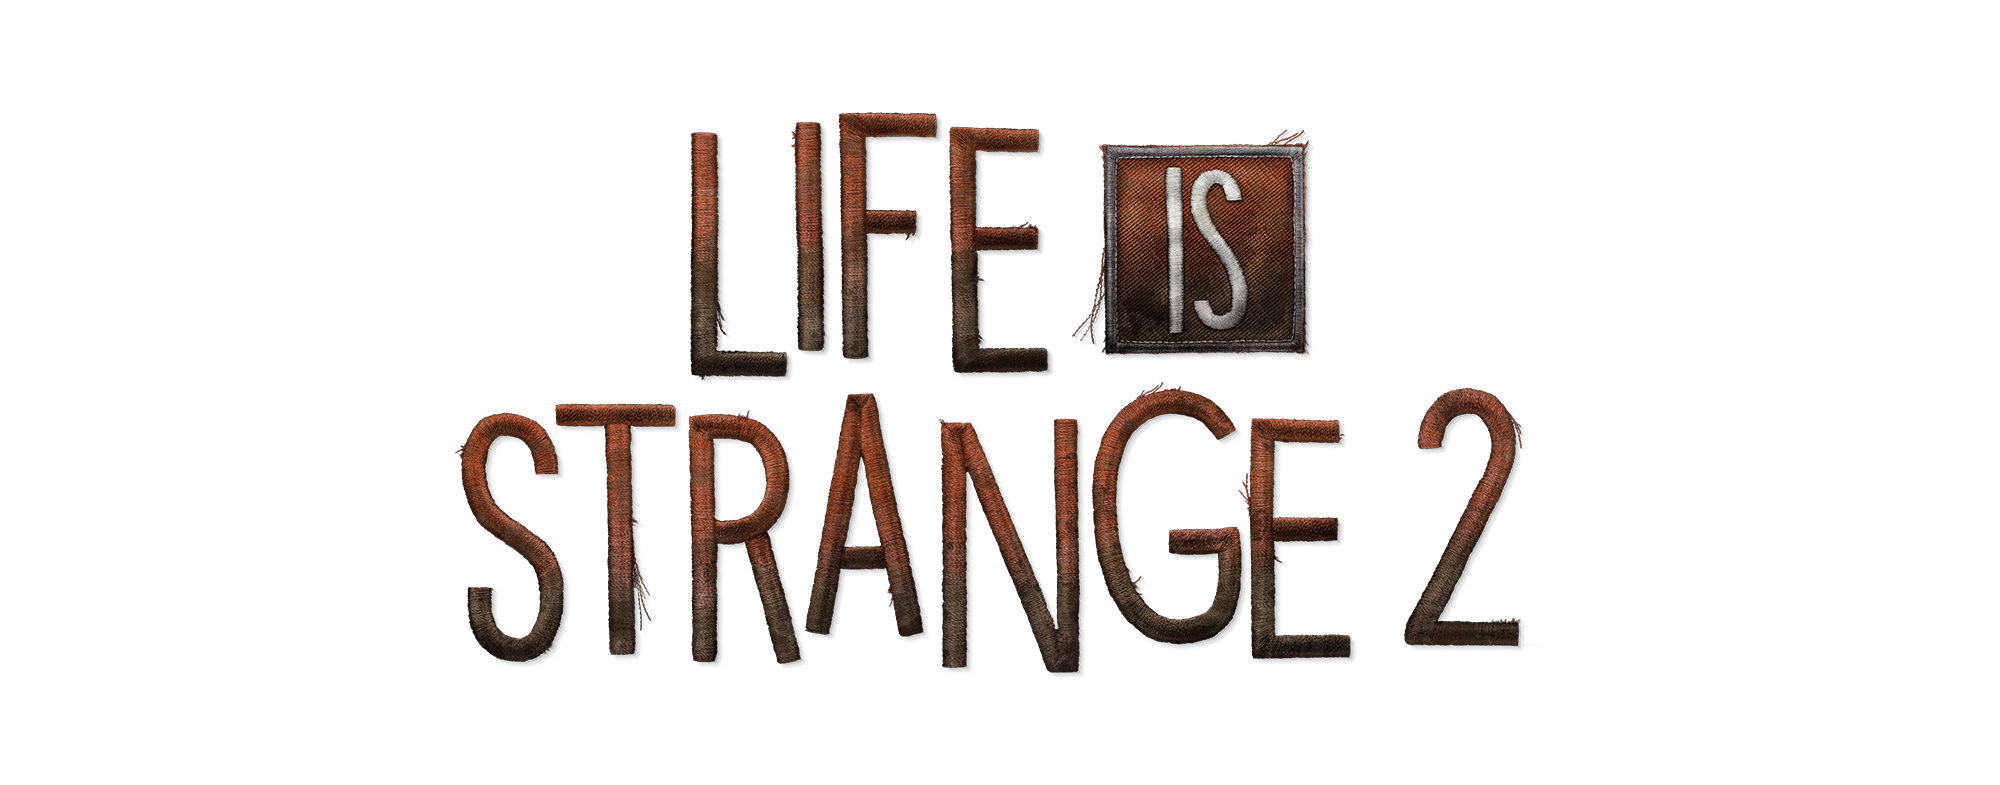 Life is life. Life is Strange 2 лого. Life is Strange 2 надпись. Strange надпись. Life is Strange Заголовок.